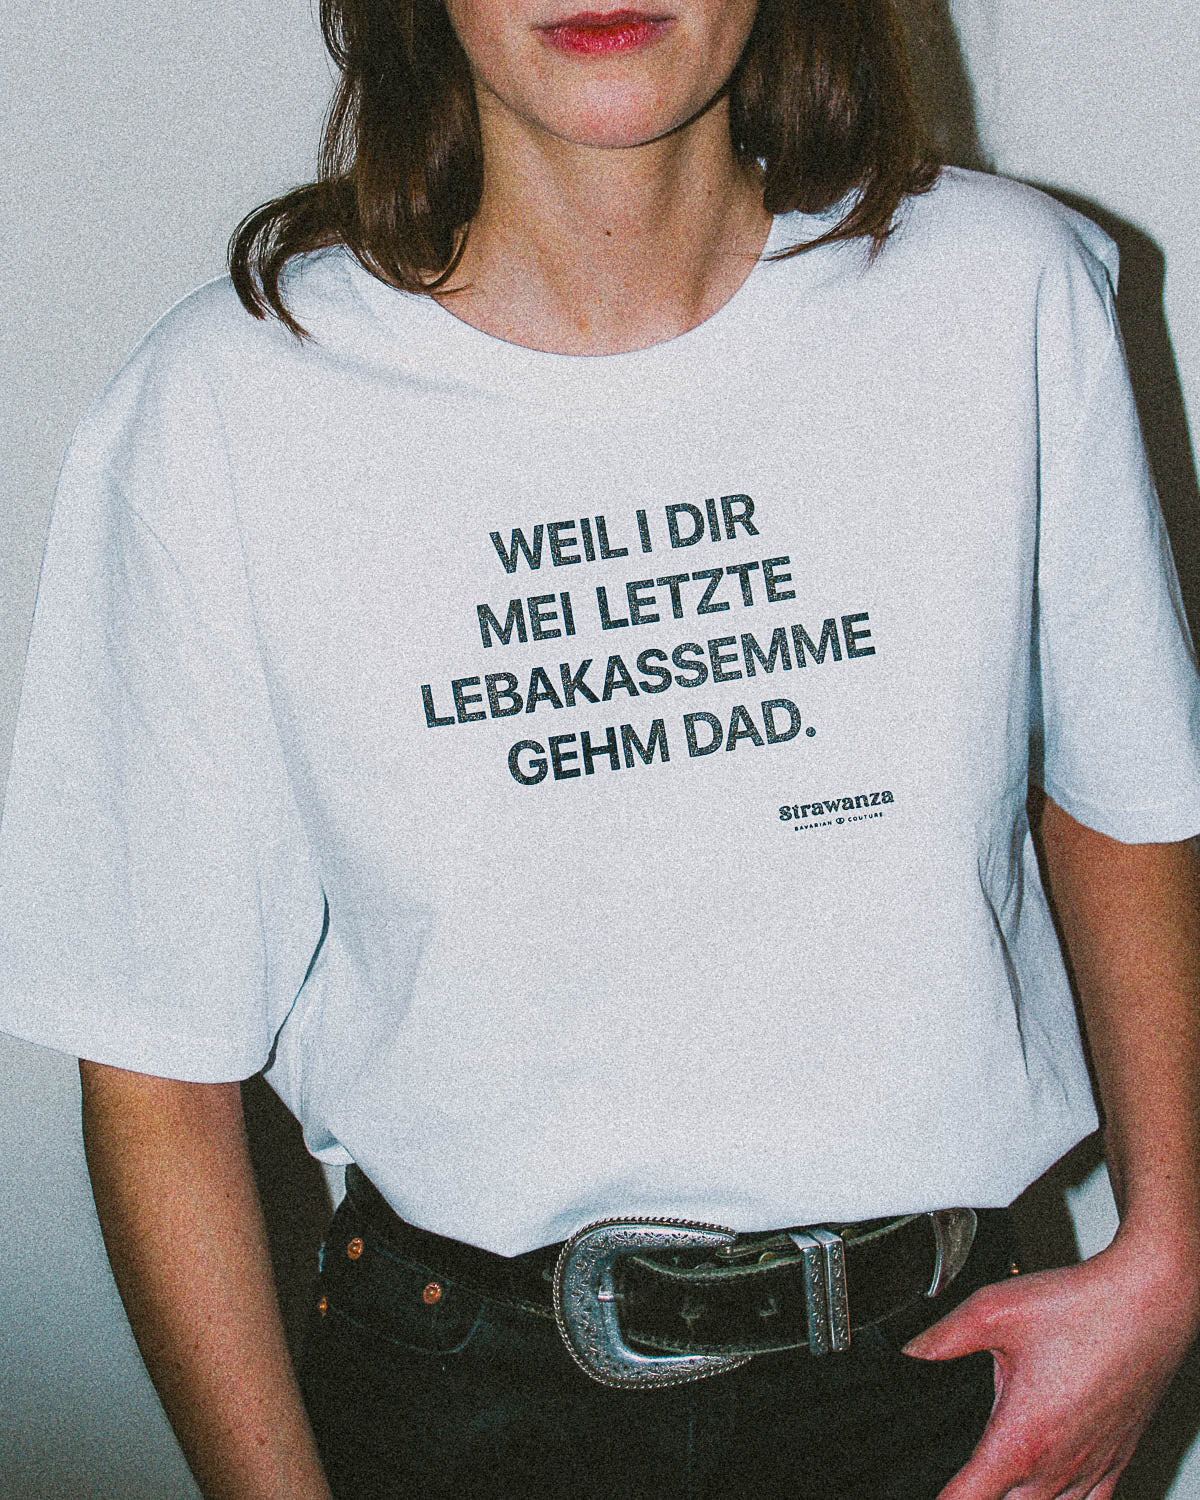 Weibliches Model trägt weißes T-Shirt mit dem Aufdruck "Weil i dir mei letzte Leberkassemme gehm dad" 